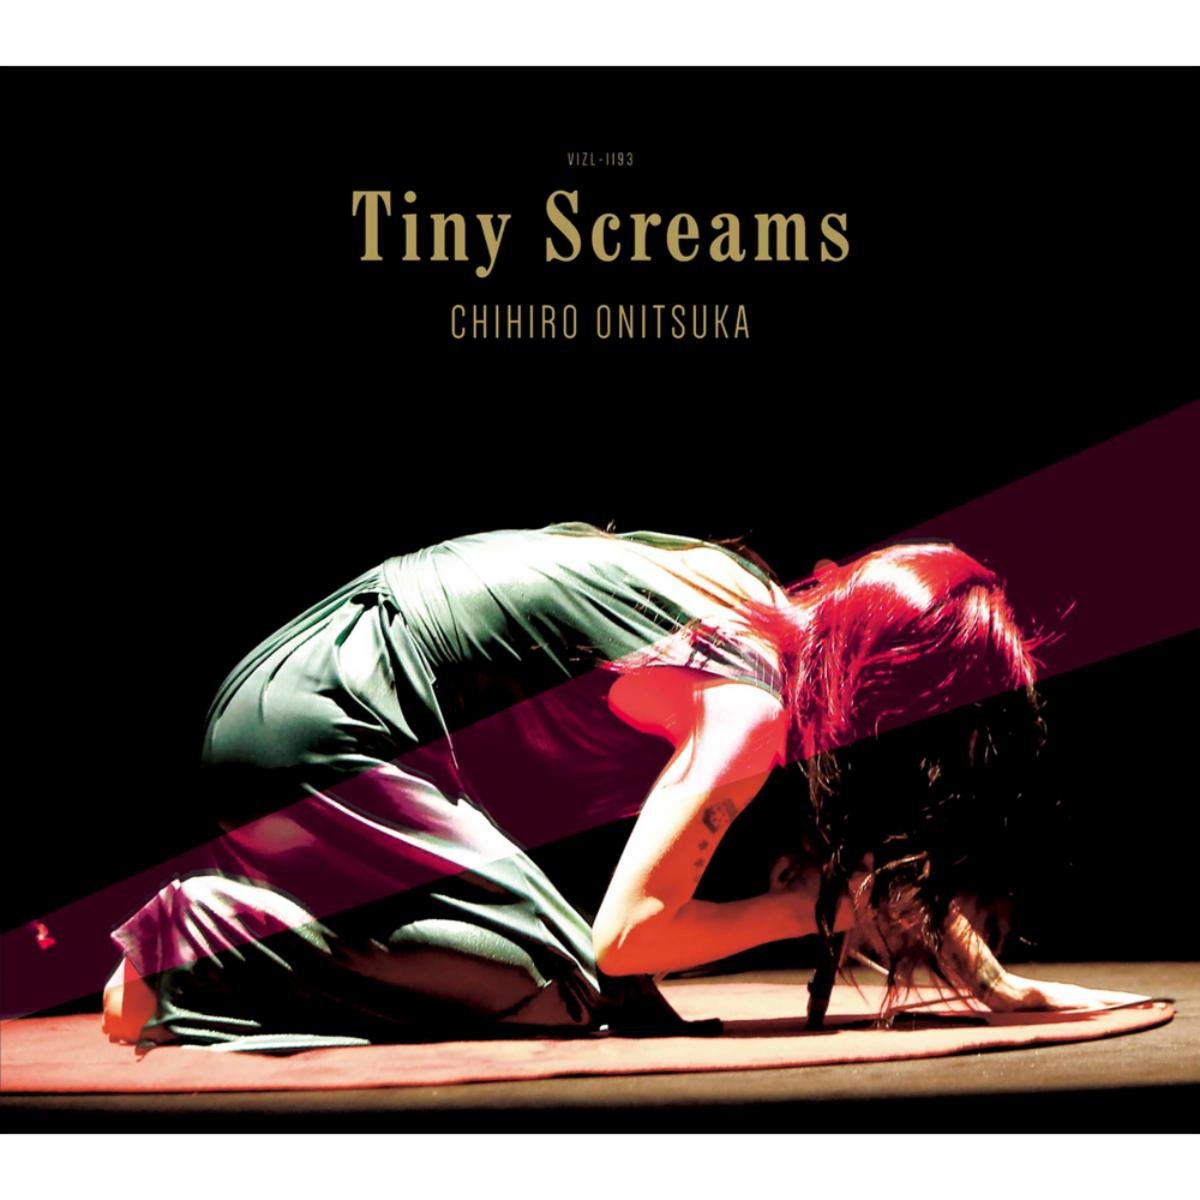 鬼束ちひろ(Chihiro Onitsuka) – Tiny Screams [Mora FLAC 24bit/96kHz]